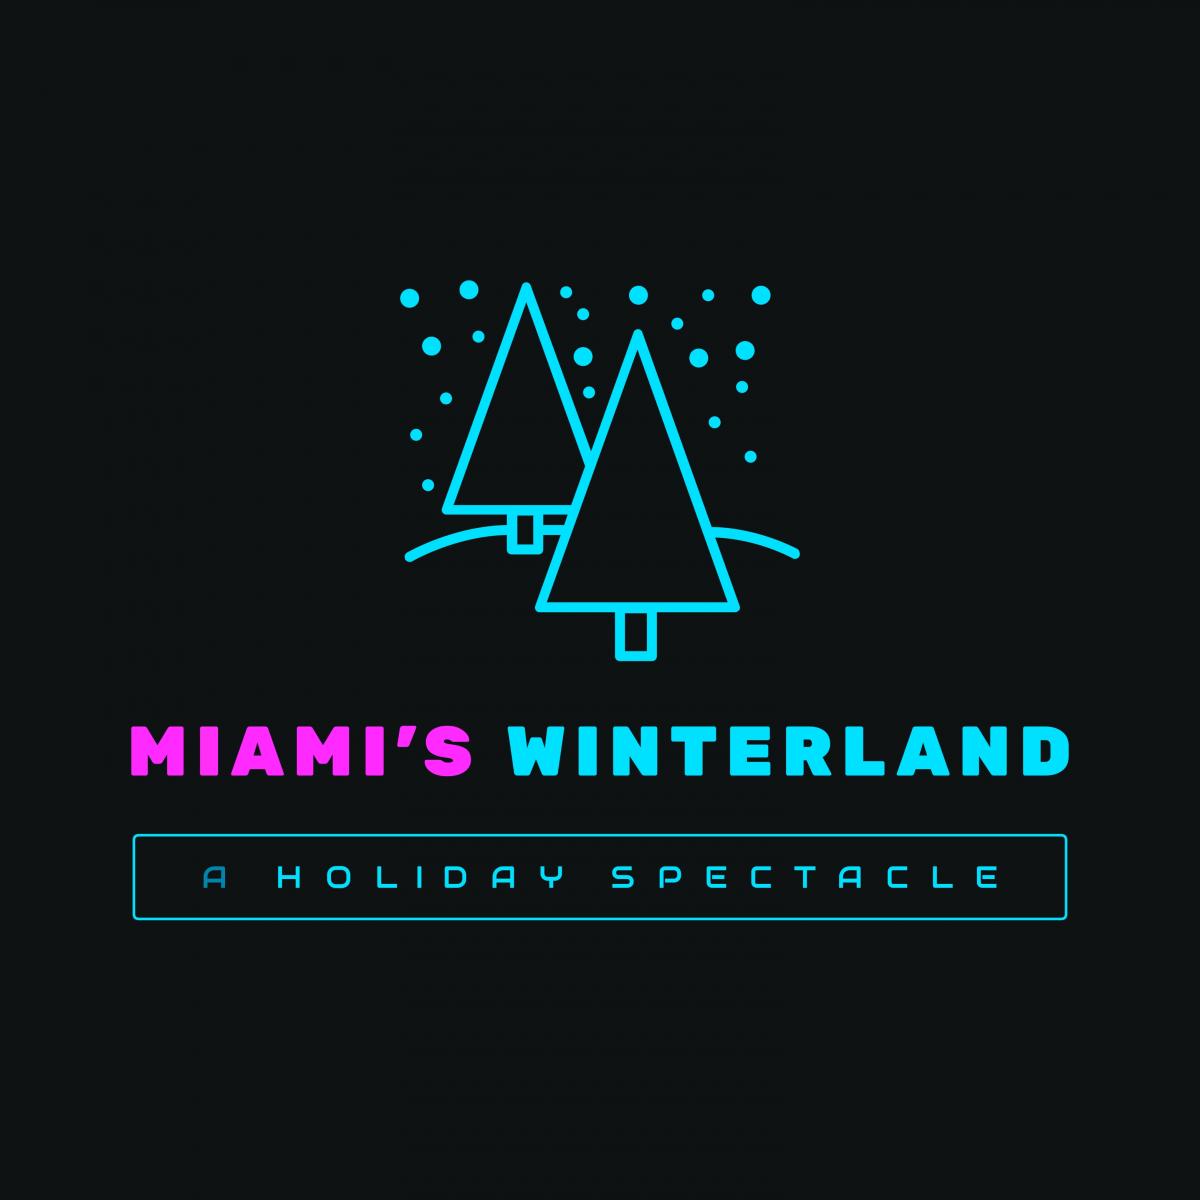 Miami’s Winterland cover image